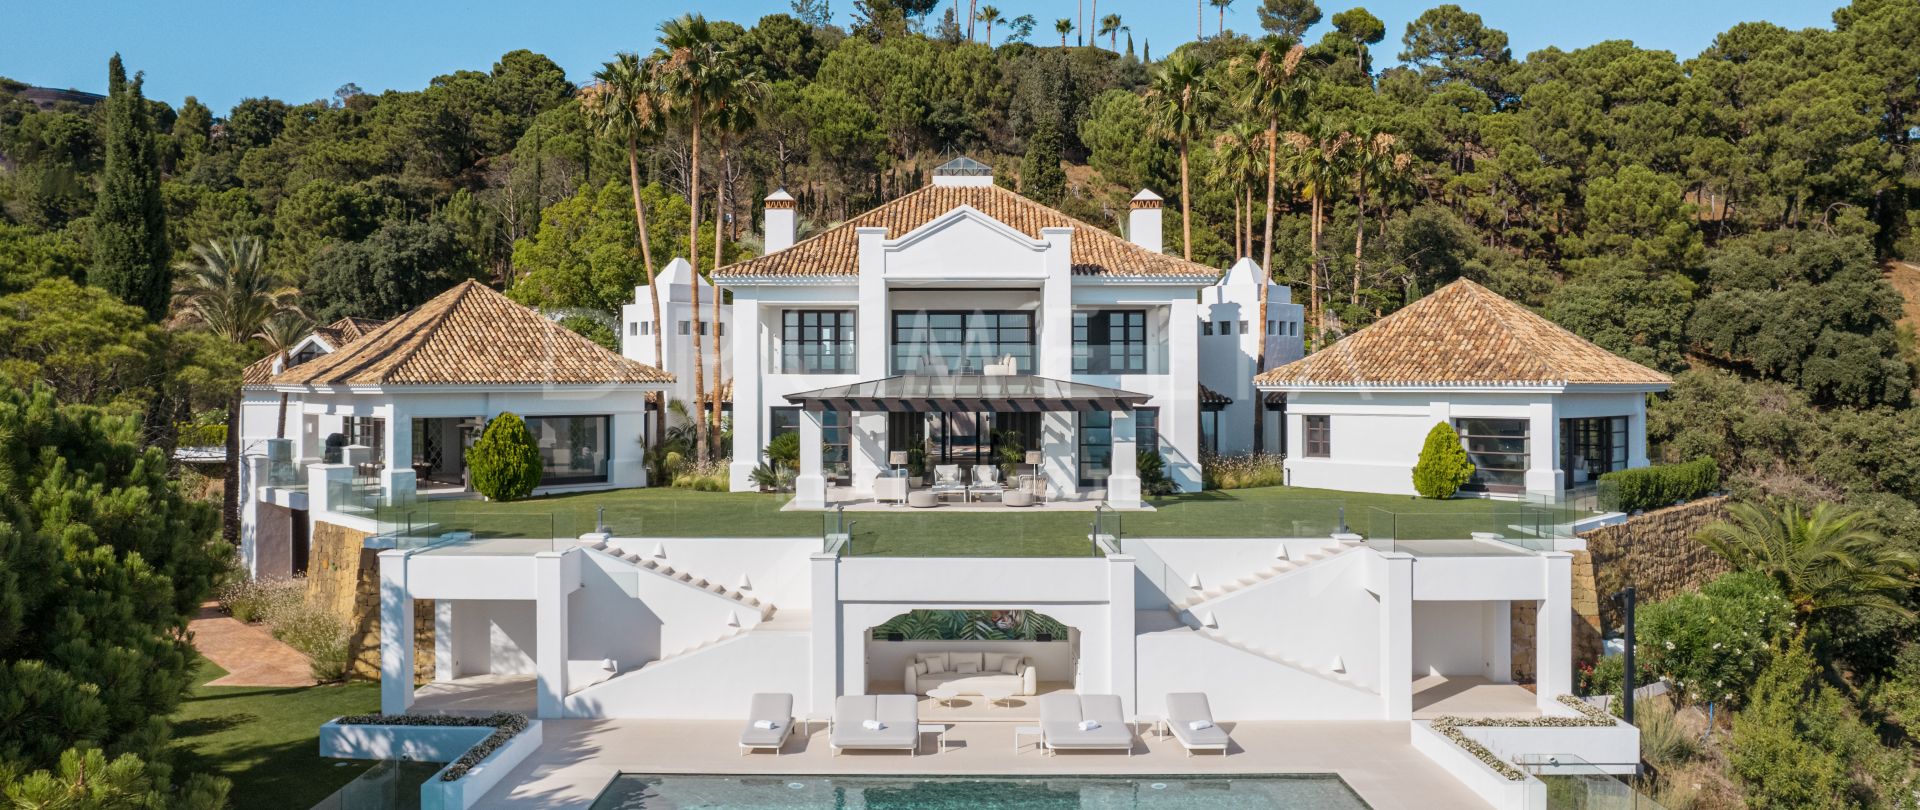 Casa Magda - Anspruchsvolle neue moderne Villa mit Panoramablick und luxuriösen Annehmlichkeiten, La Zagaleta, Benahavis